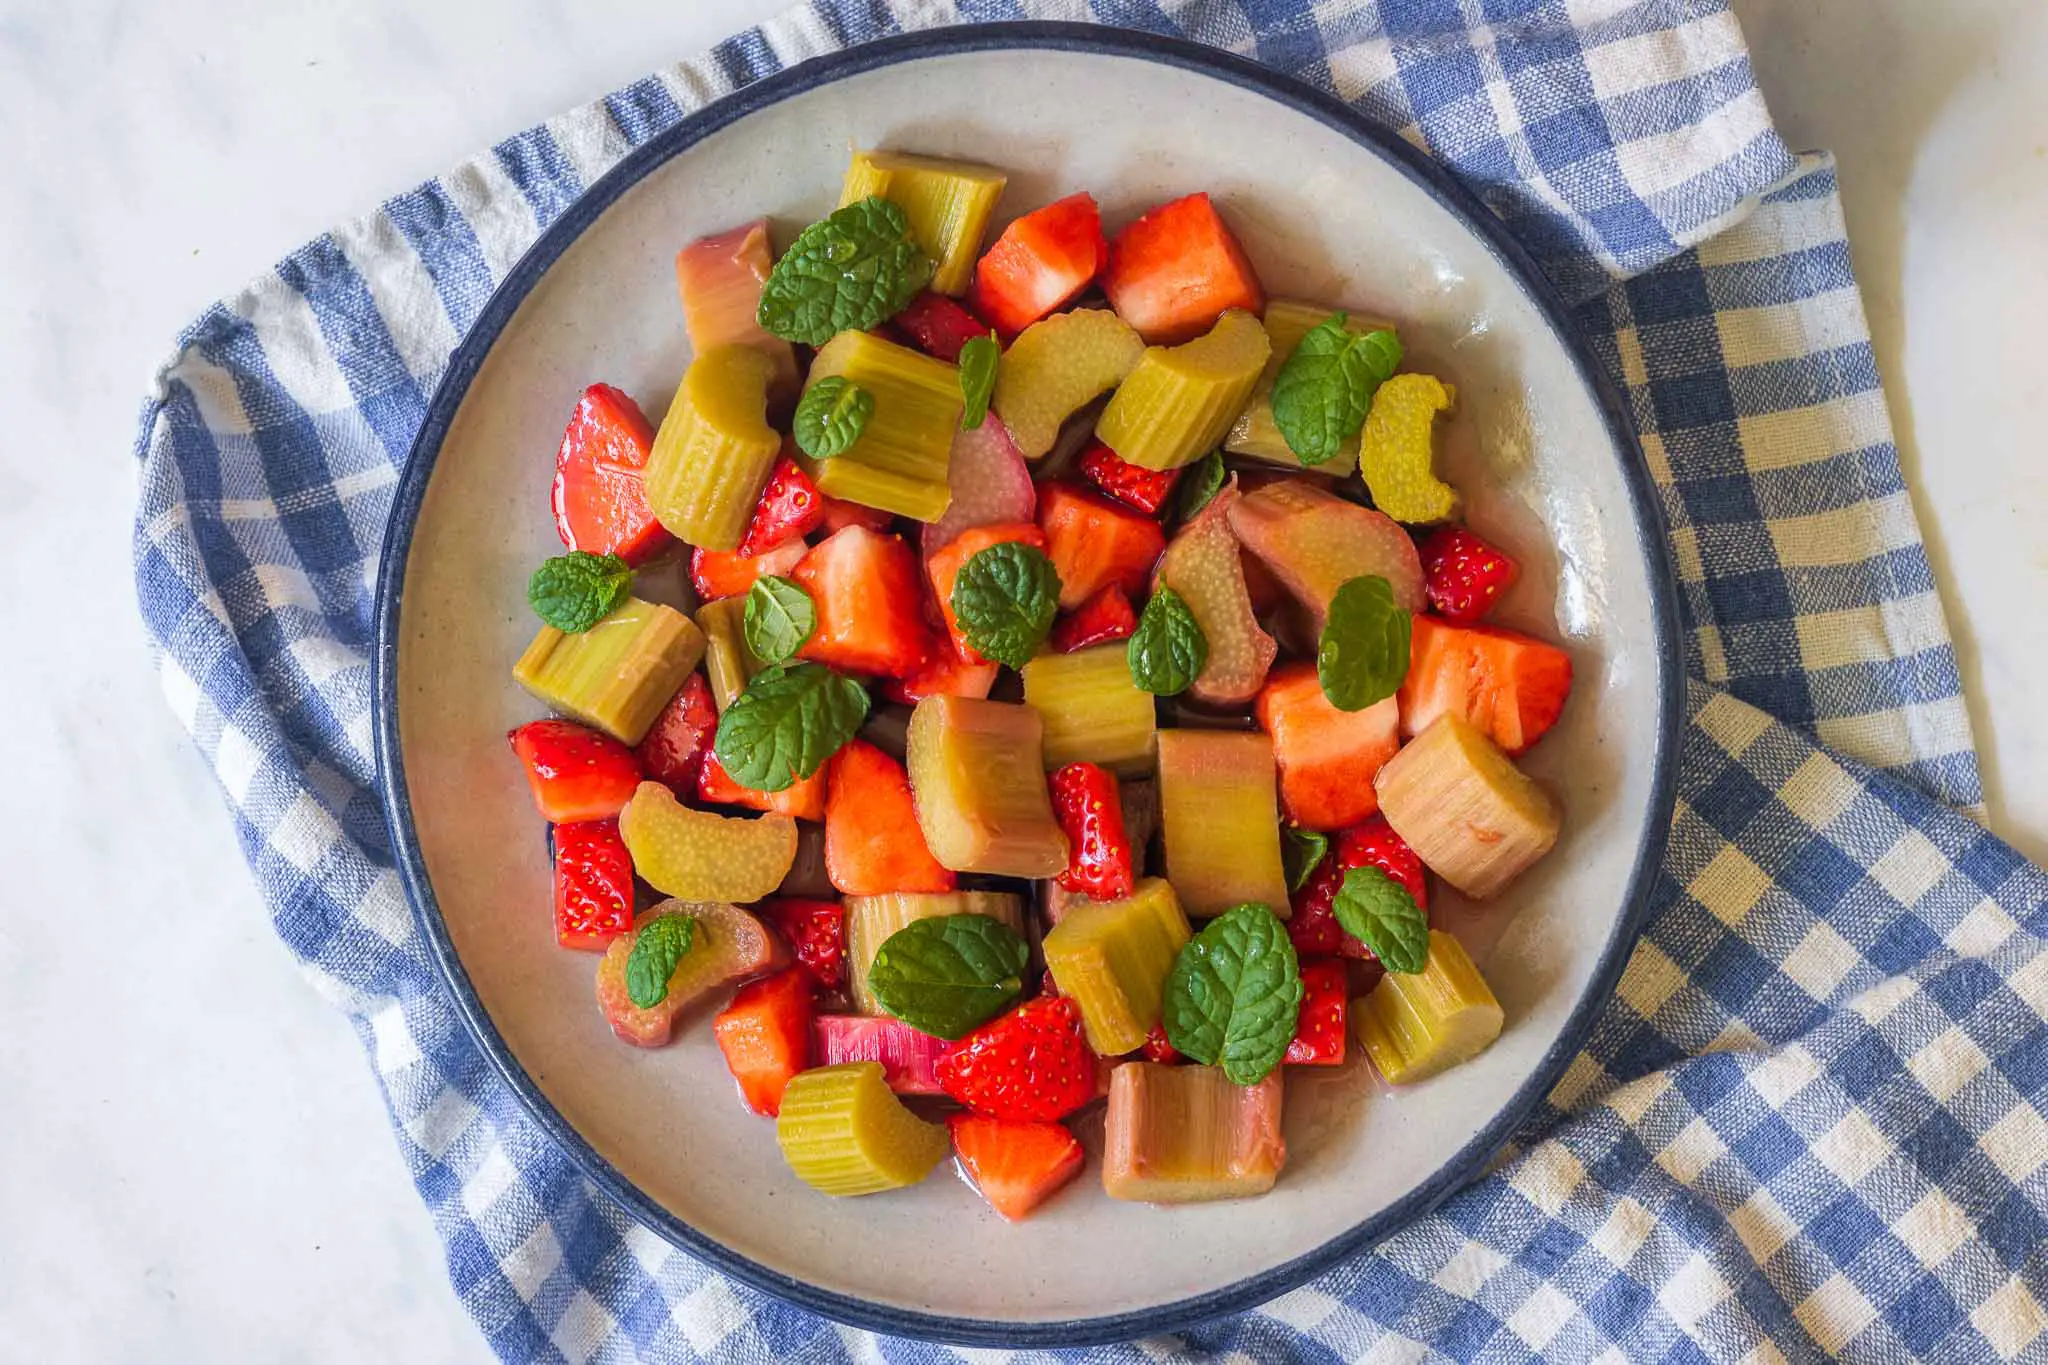 Strawberry-Rhubarb Salad